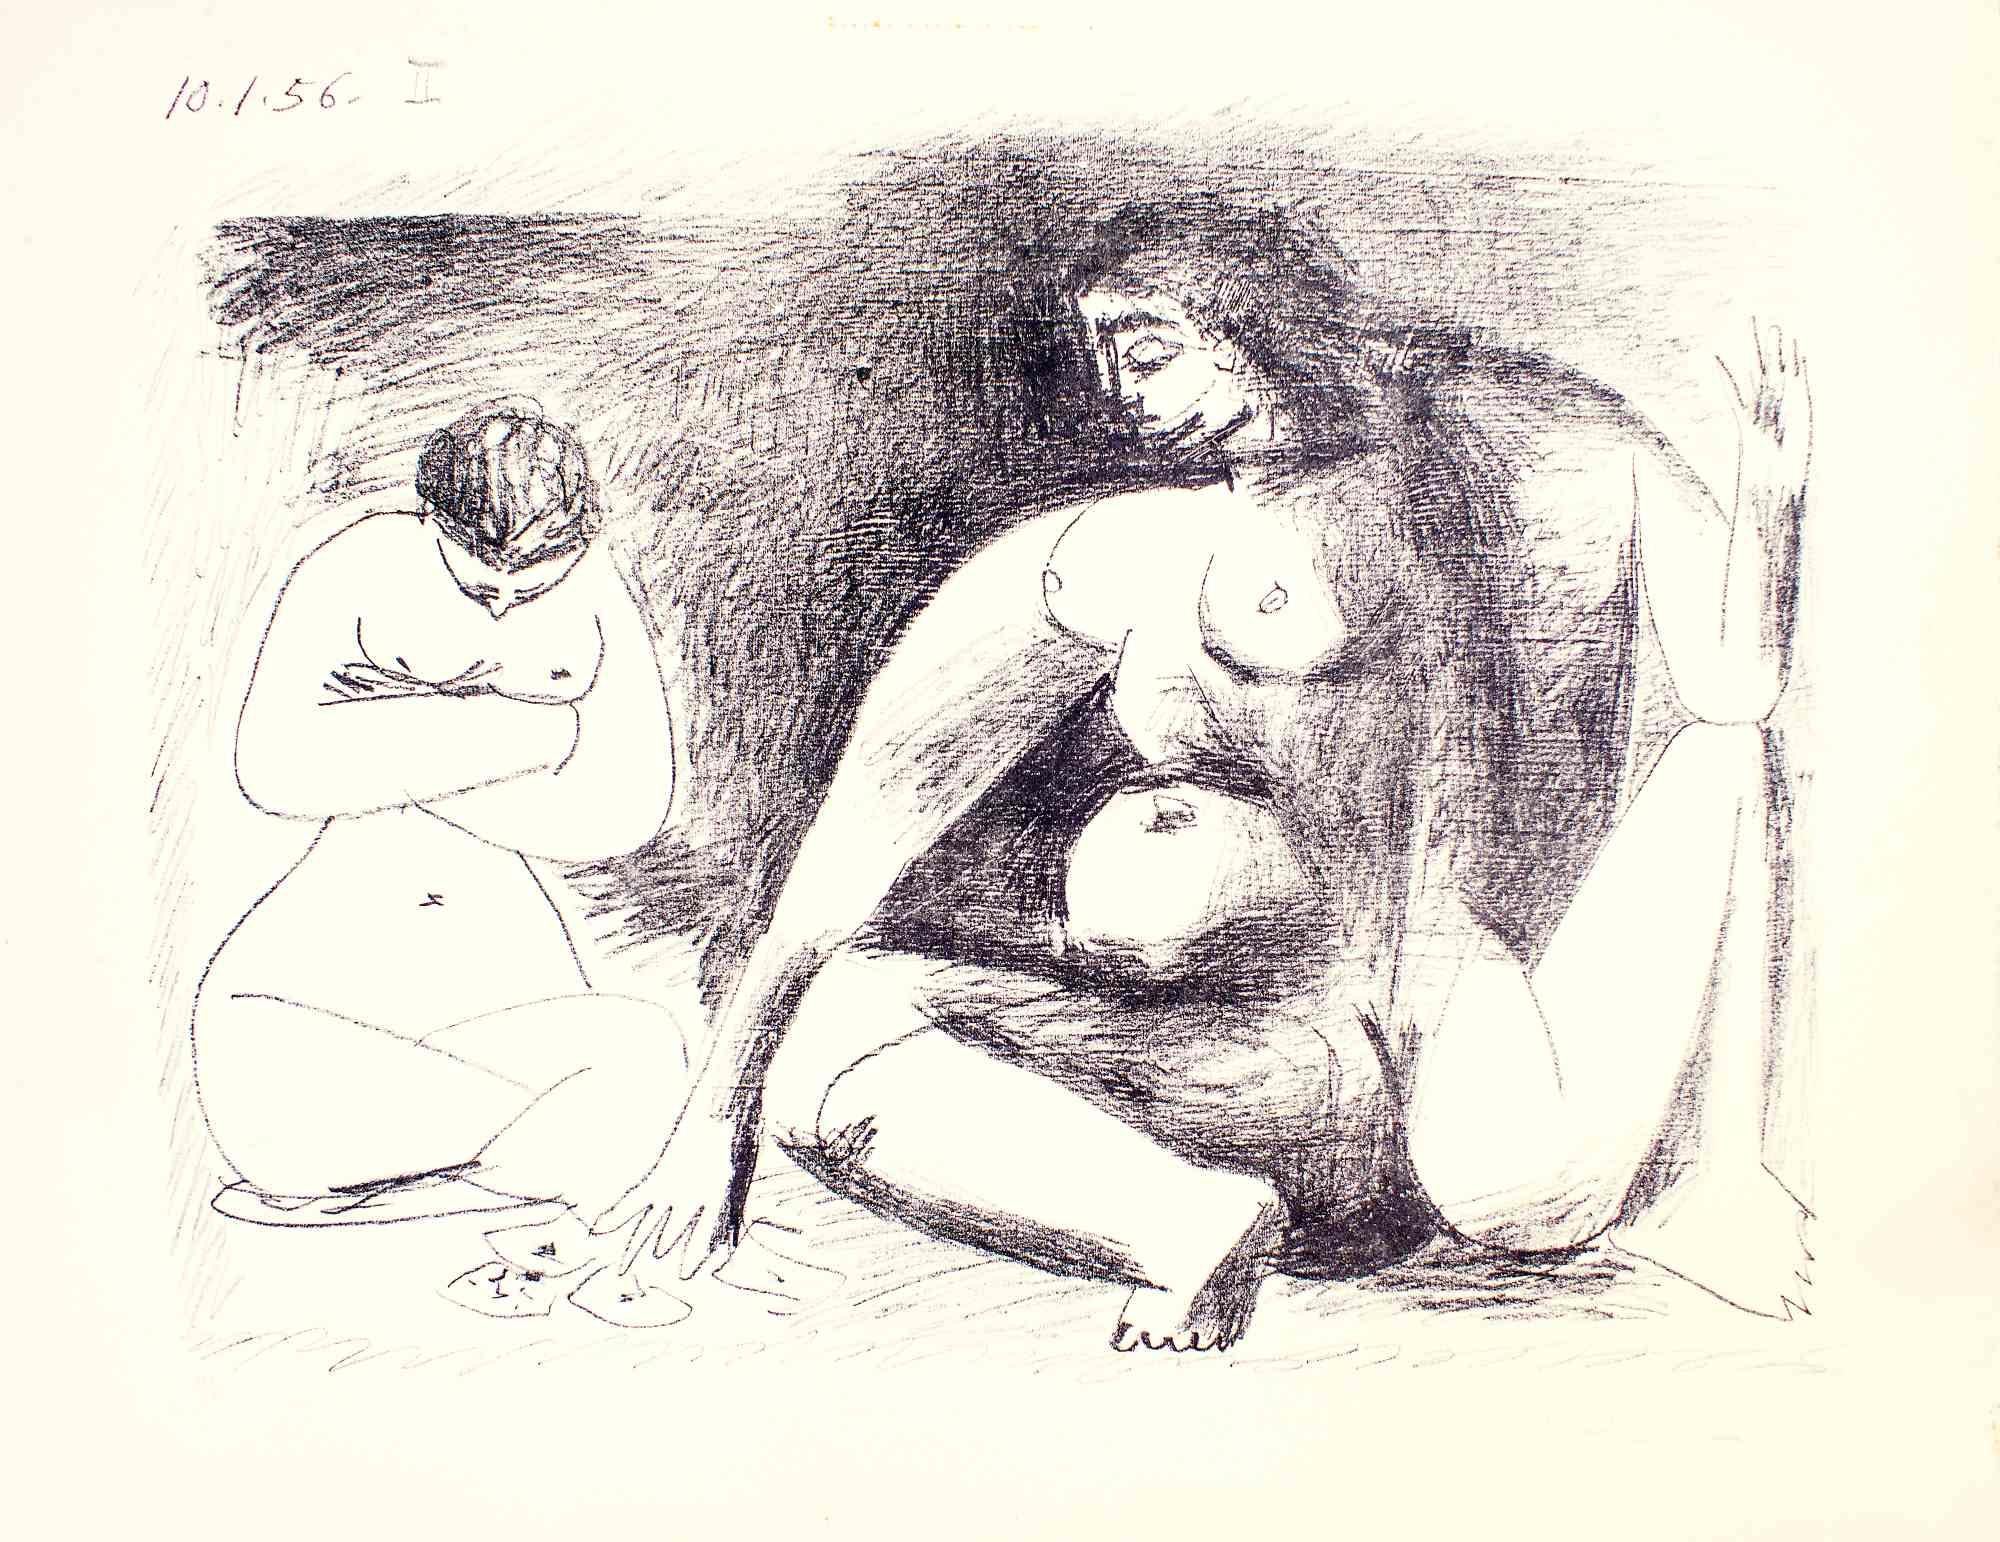 Deux Femmes Accroupies - eau-forte de Pablo Picasso - 1956